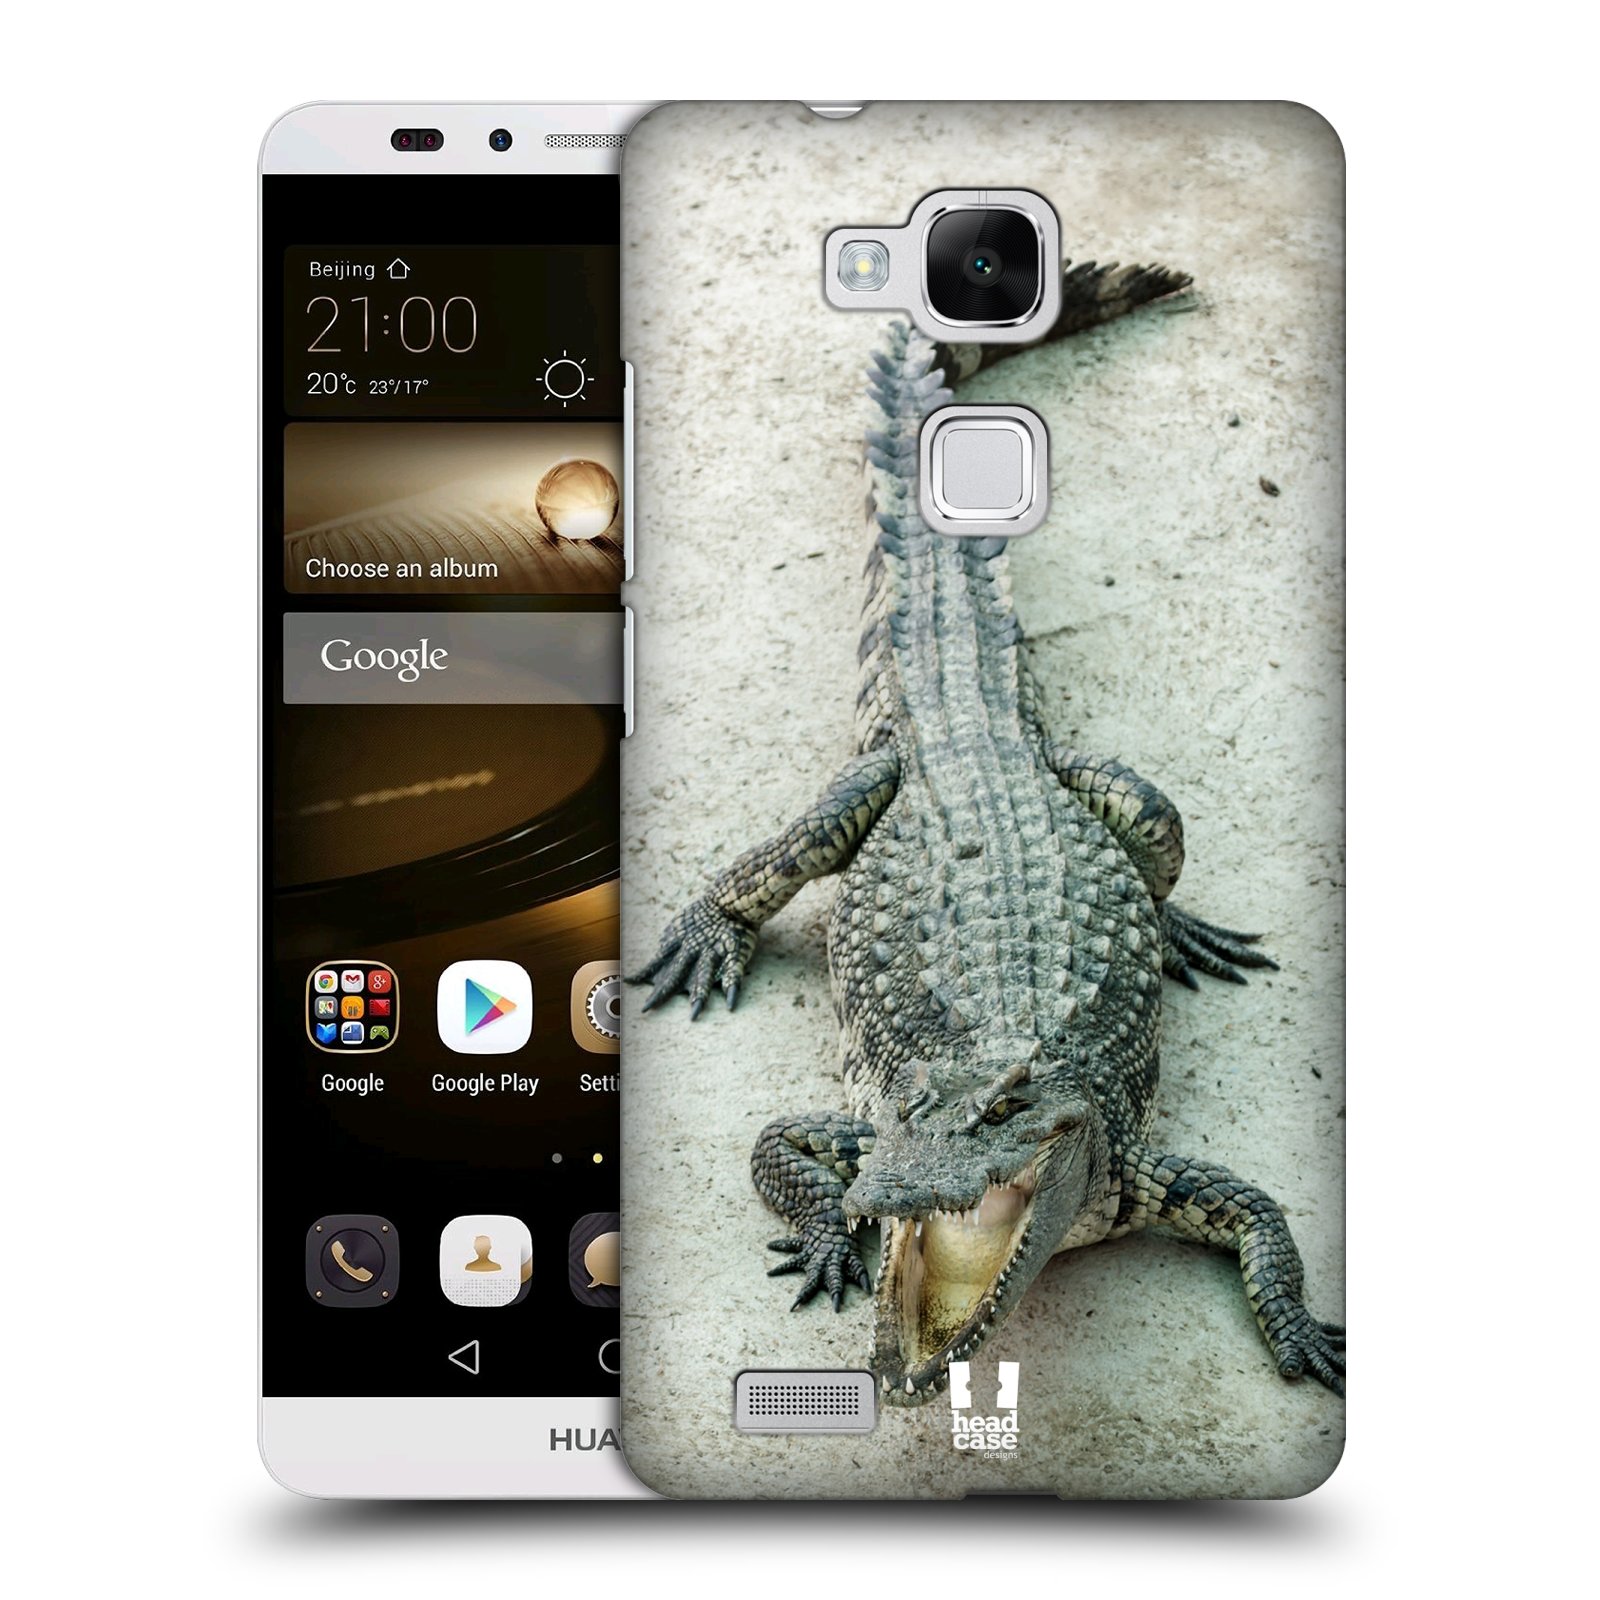 HEAD CASE plastový obal na mobil Huawei Mate 7 vzor Divočina, Divoký život a zvířata foto KROKODÝL, KAJMAN